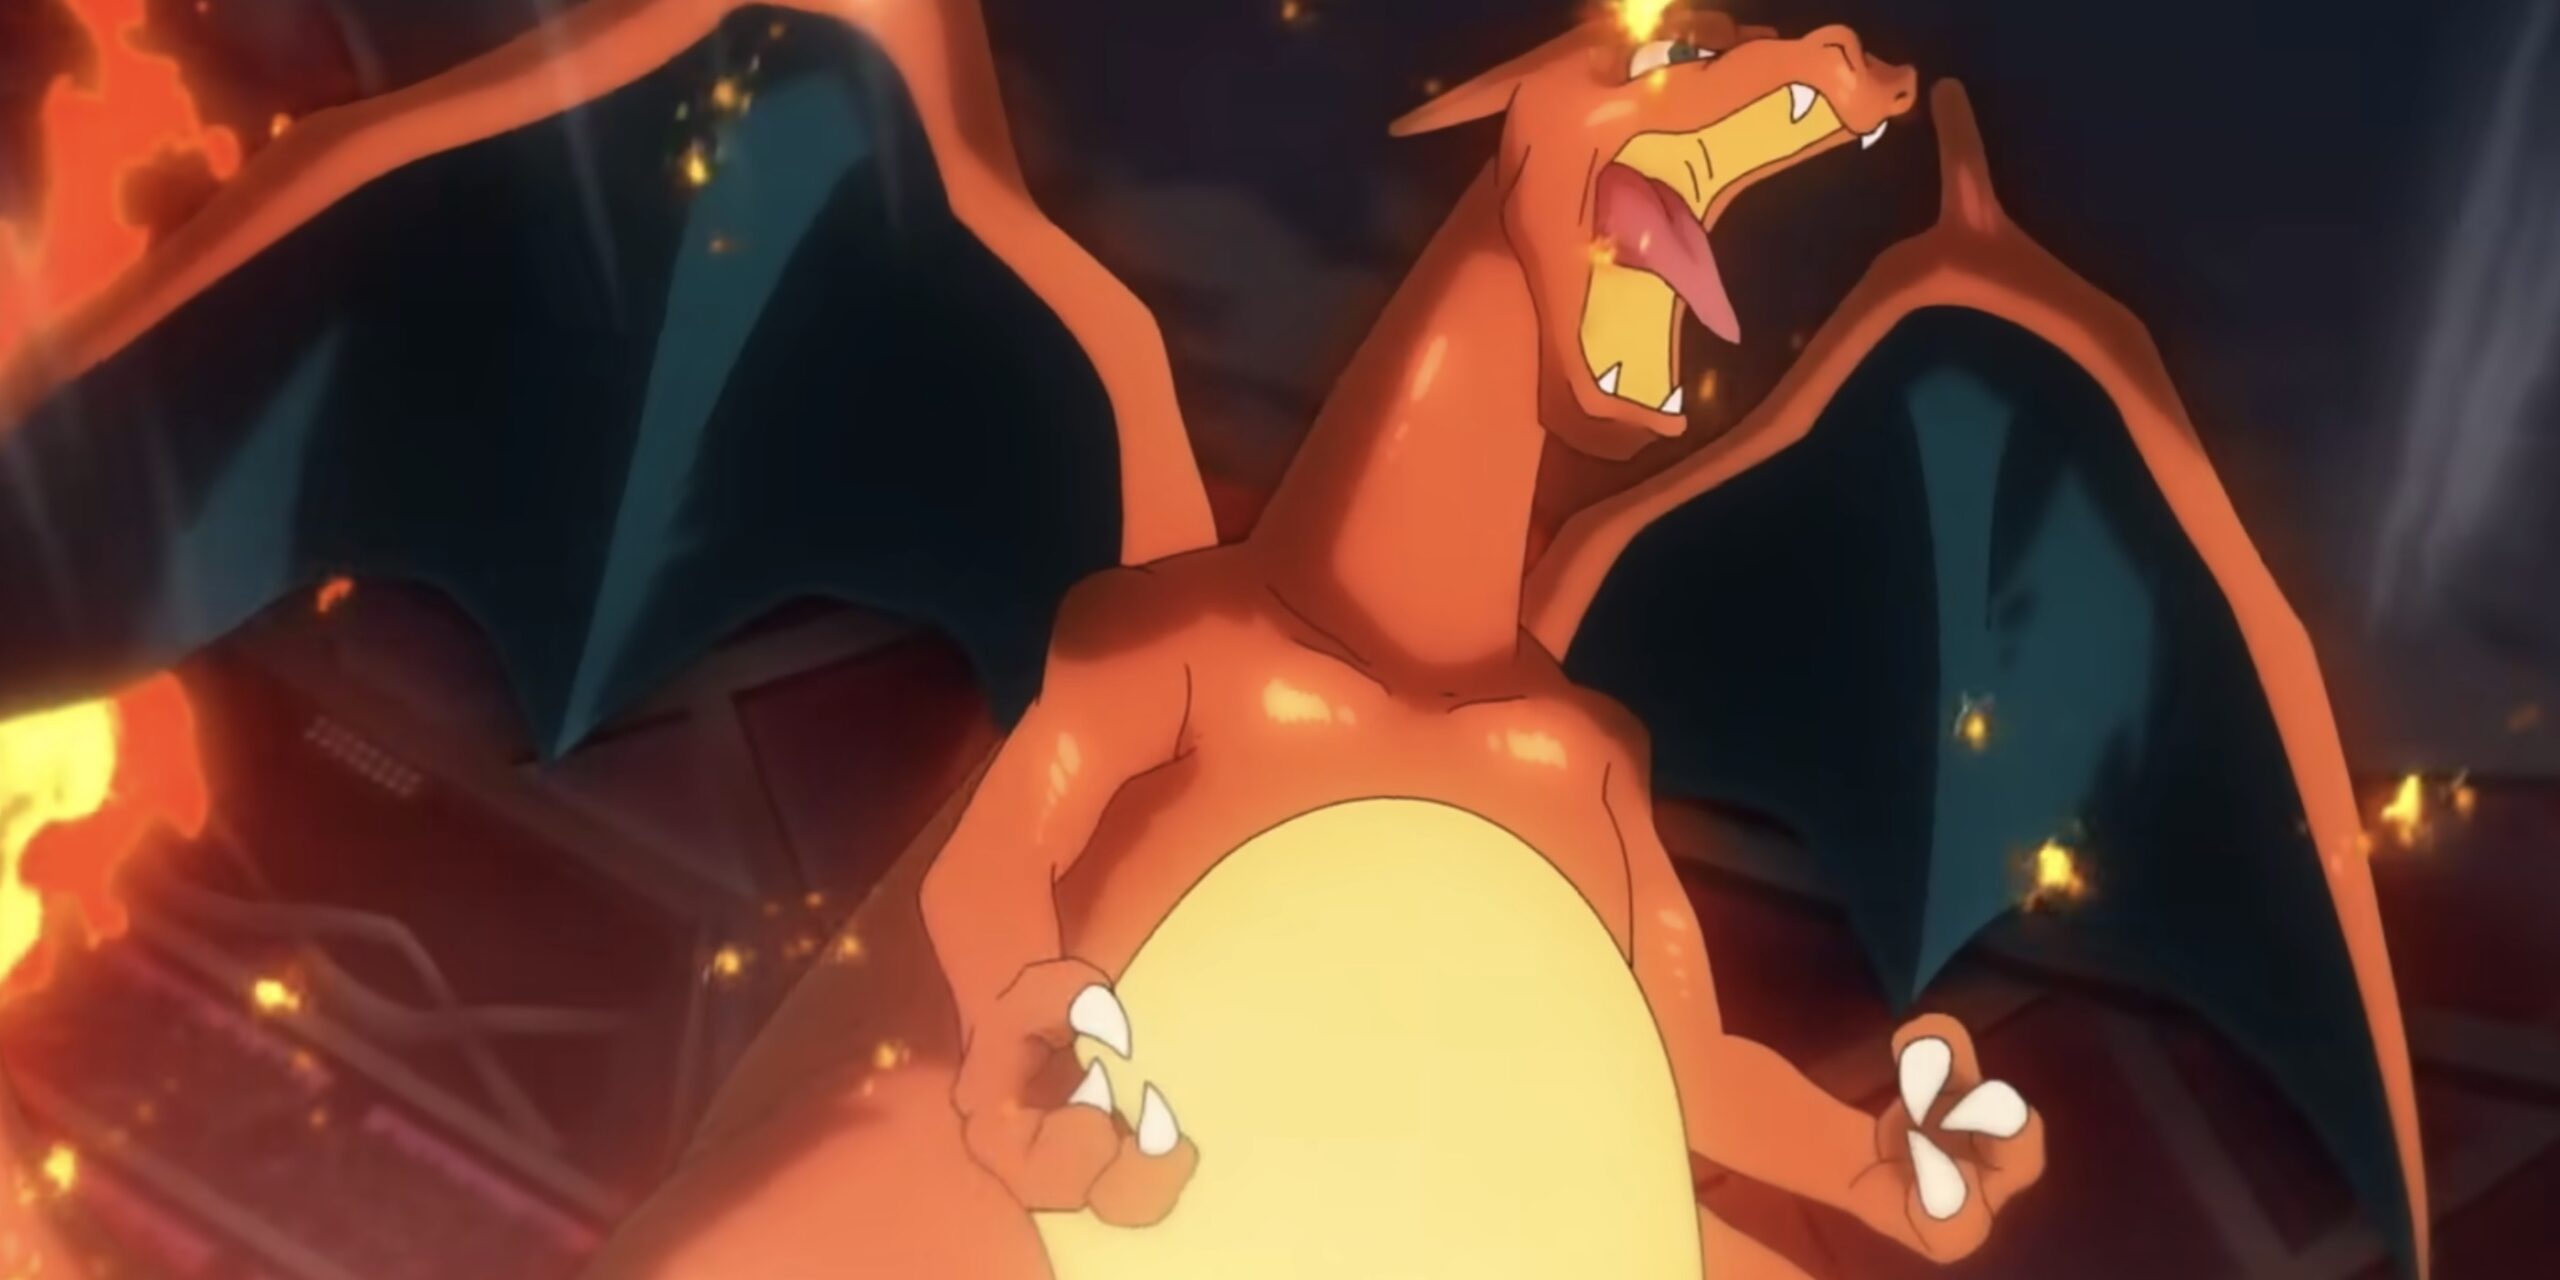 Ash's Last Pokémon Episode Ends with a Controversial Conclusion